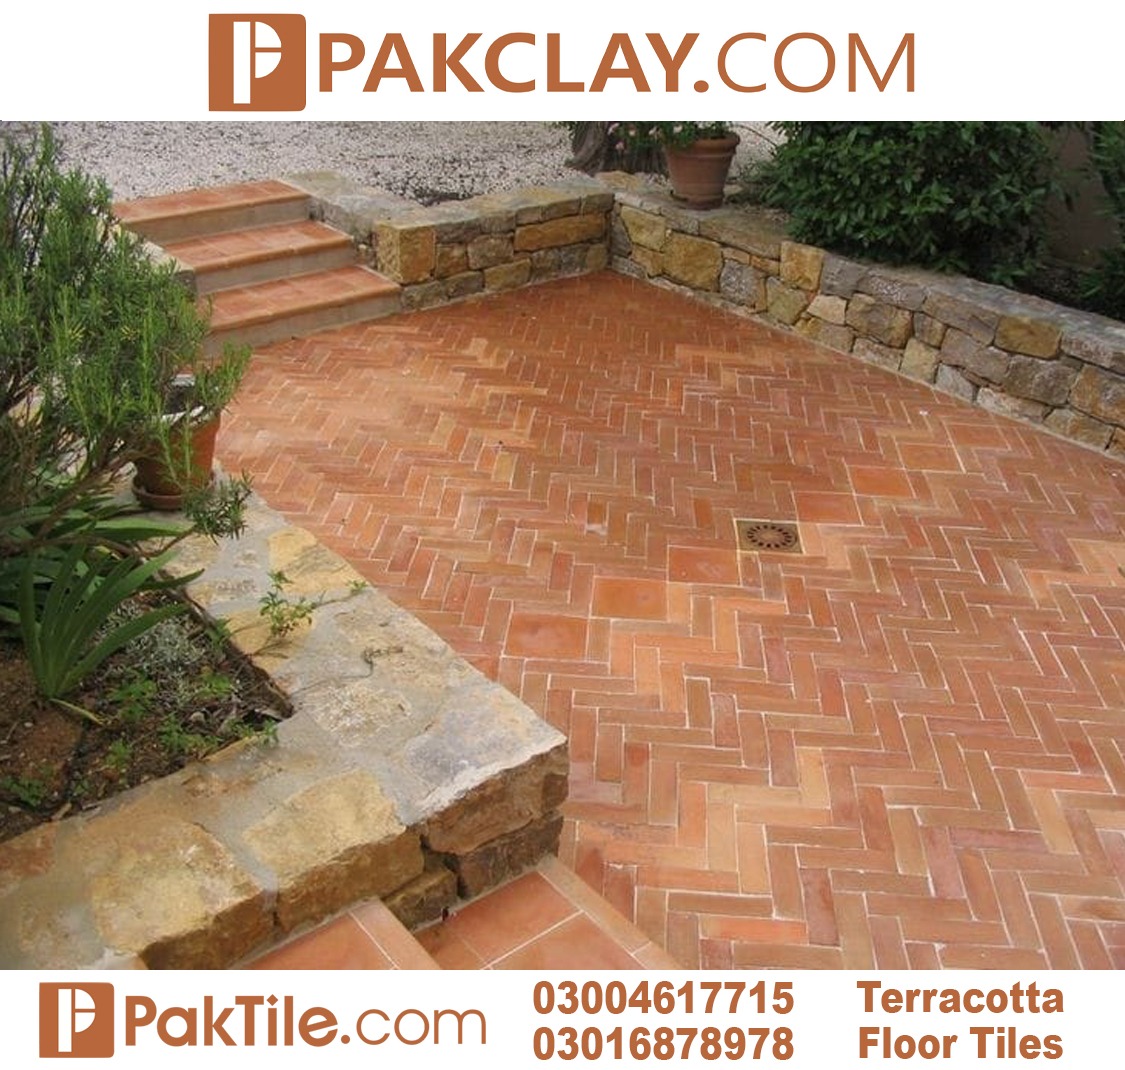 Terracotta Floor Tiles Design in Pakistan2